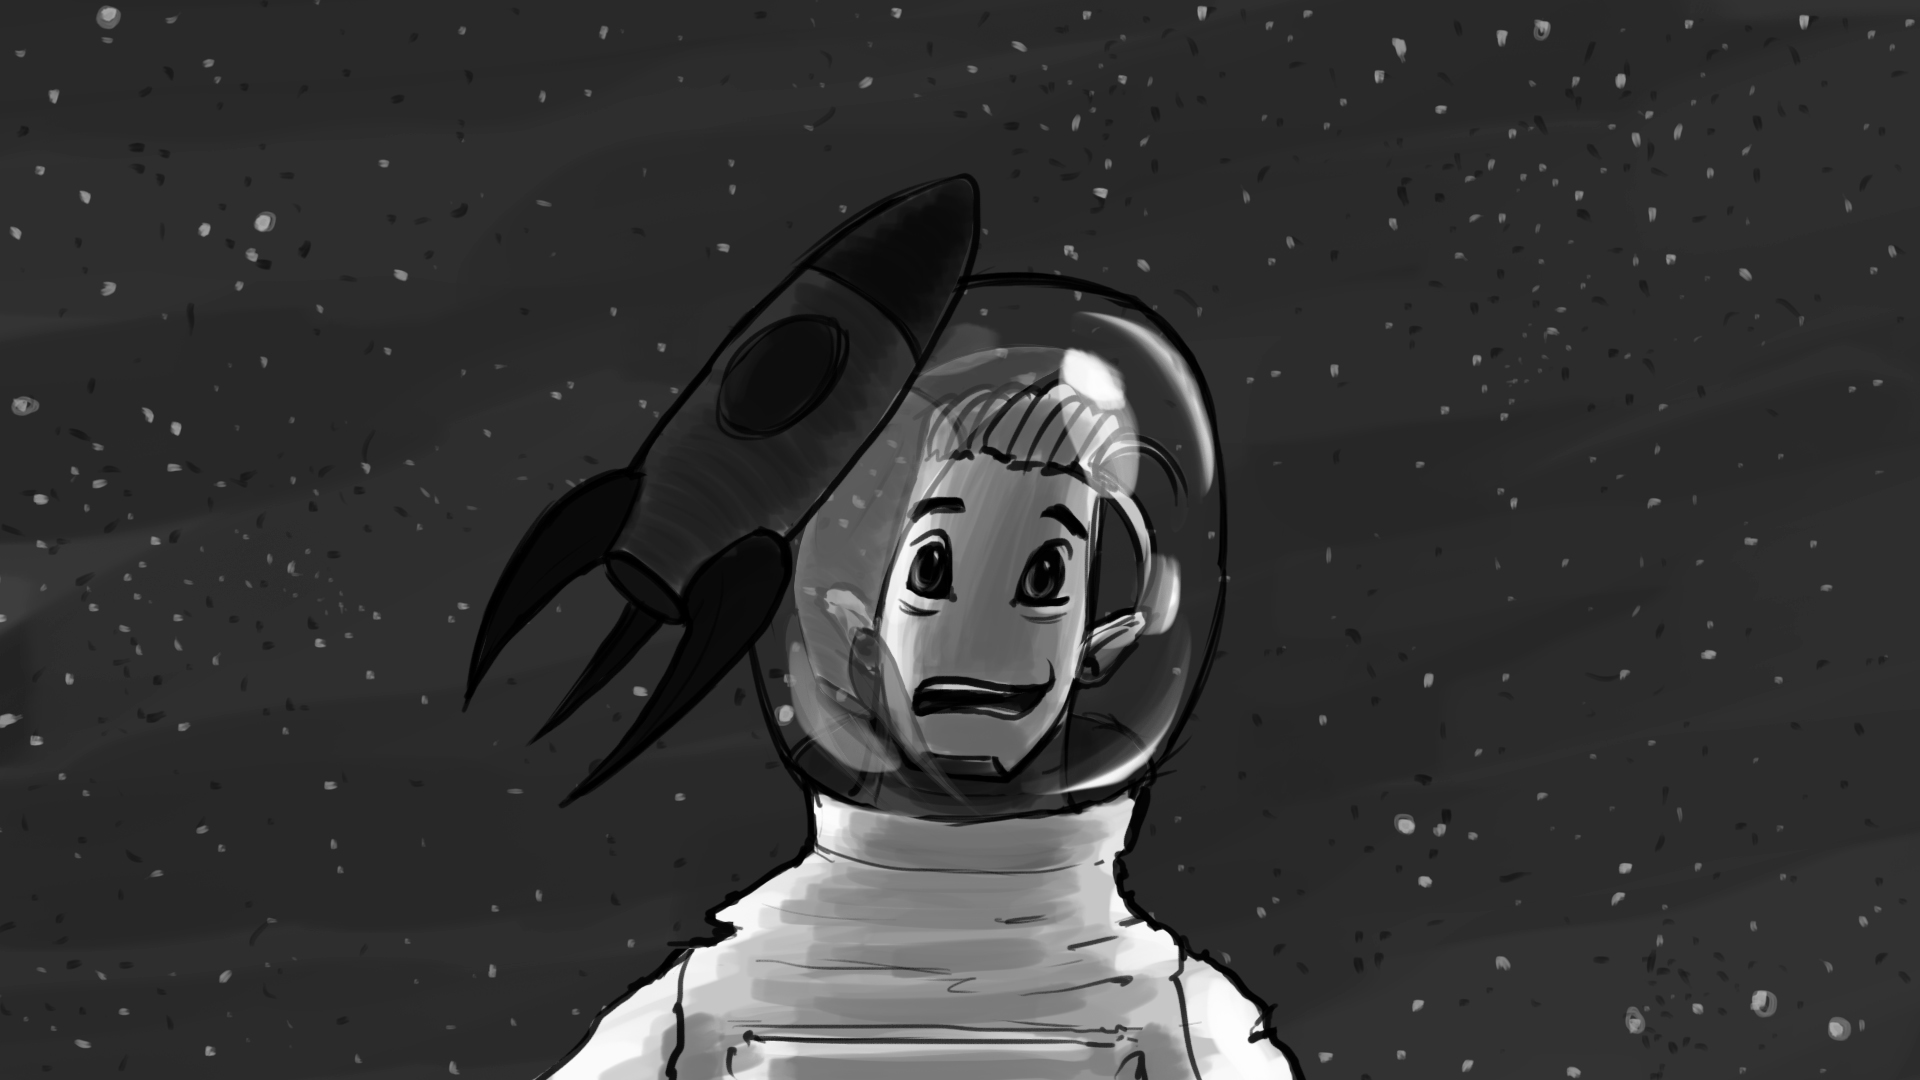 Rocket_Man_Storyboard_Artboard 27.jpg